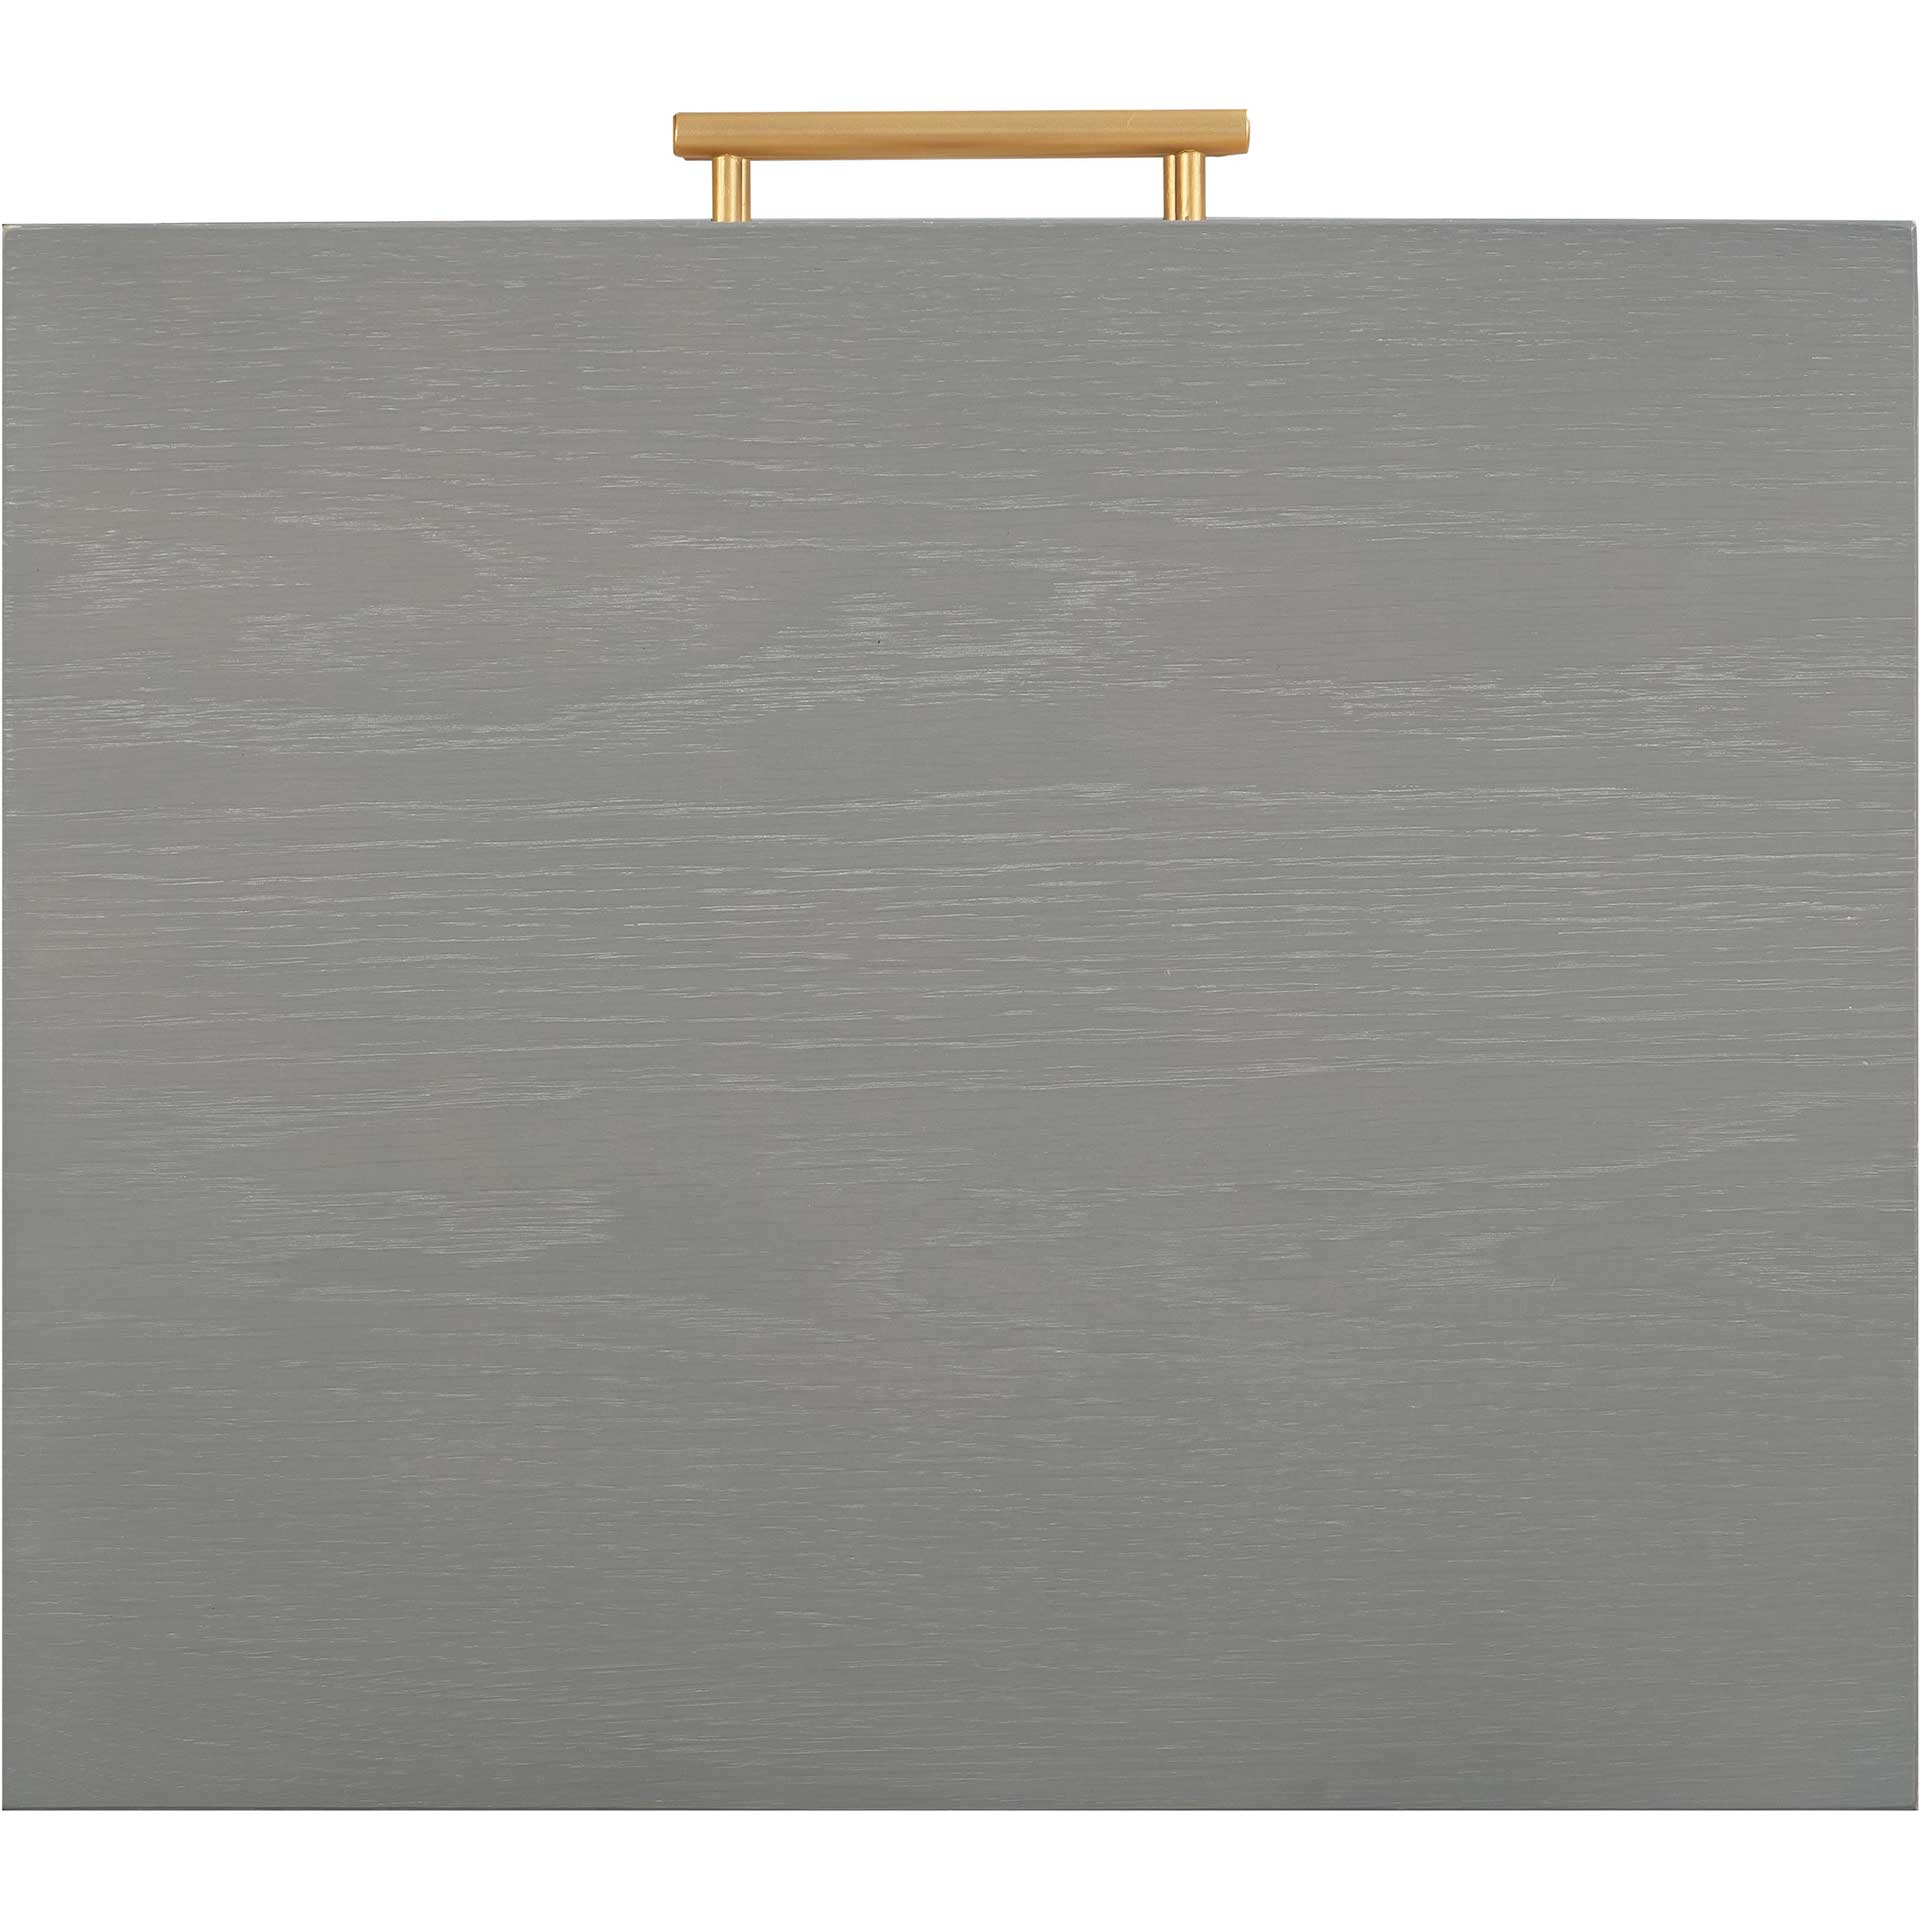 Quiana Side Table Gray